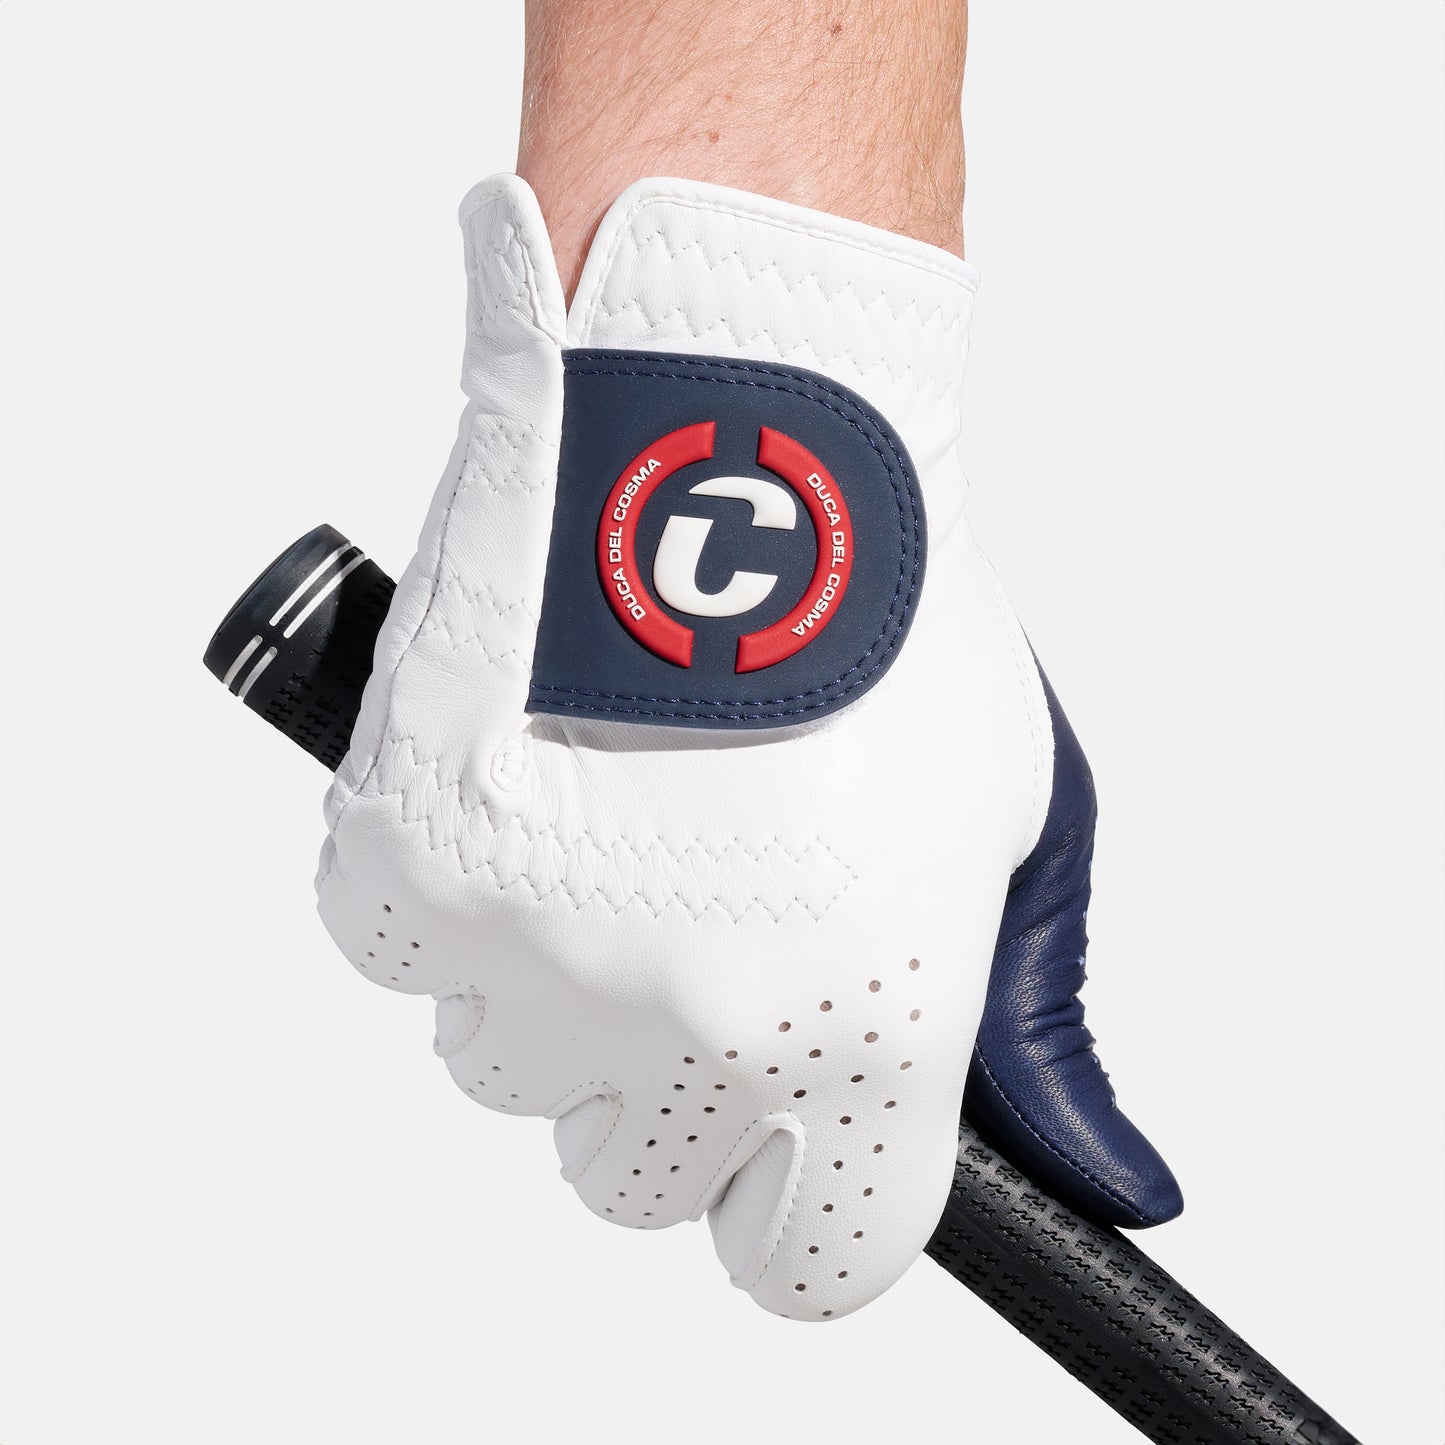 Professional Cabretta Golf Glove